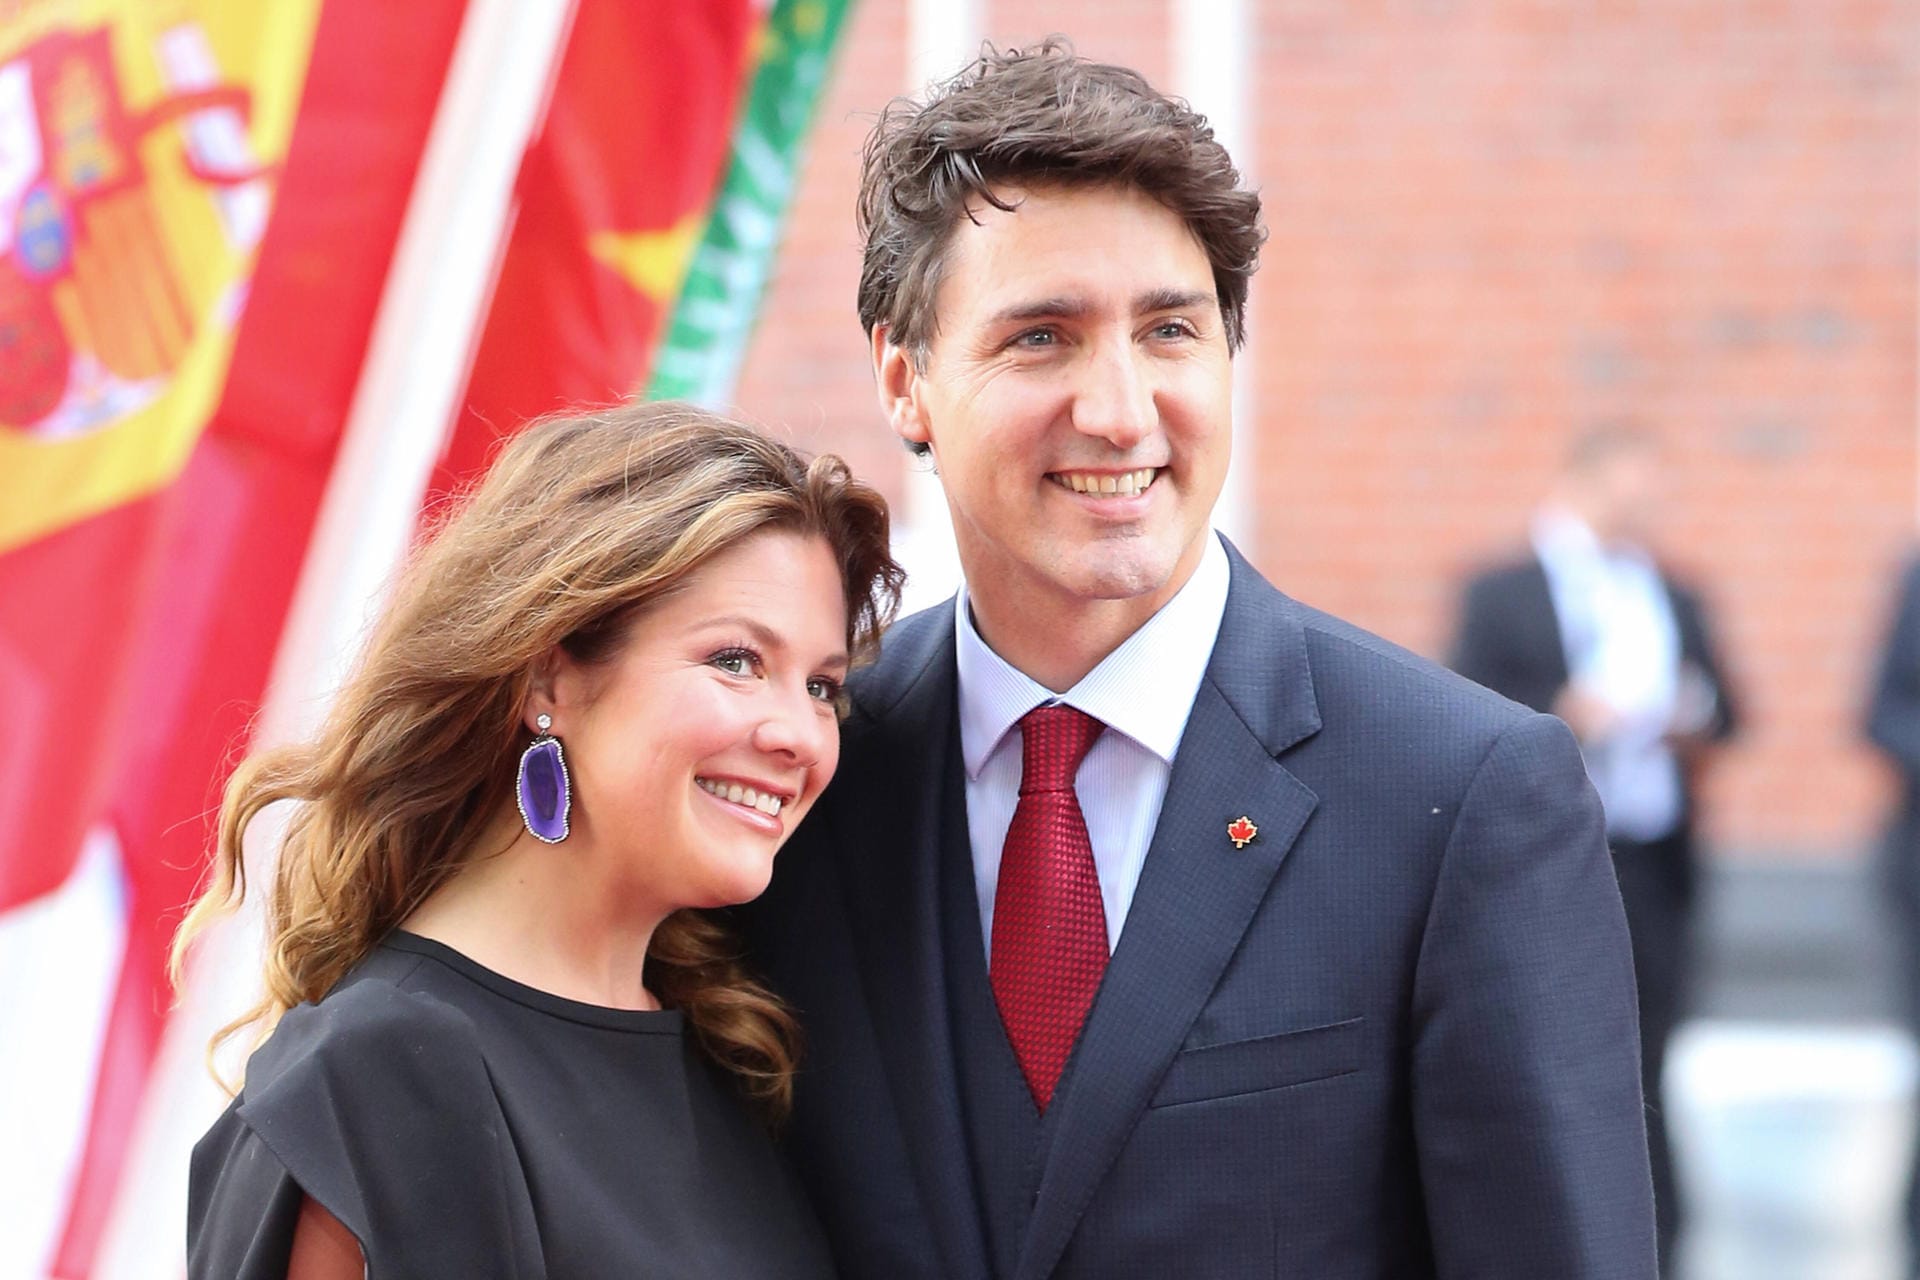 Sophie Trudeau infizierte sich Anfang März mit dem Coronavirus. Ihr Ehemann, der kanadische Ministerpräsident Justin Trudeau, begab sich daraufhin in Quarantäne, blieb jedoch von einer Ansteckung verschont.